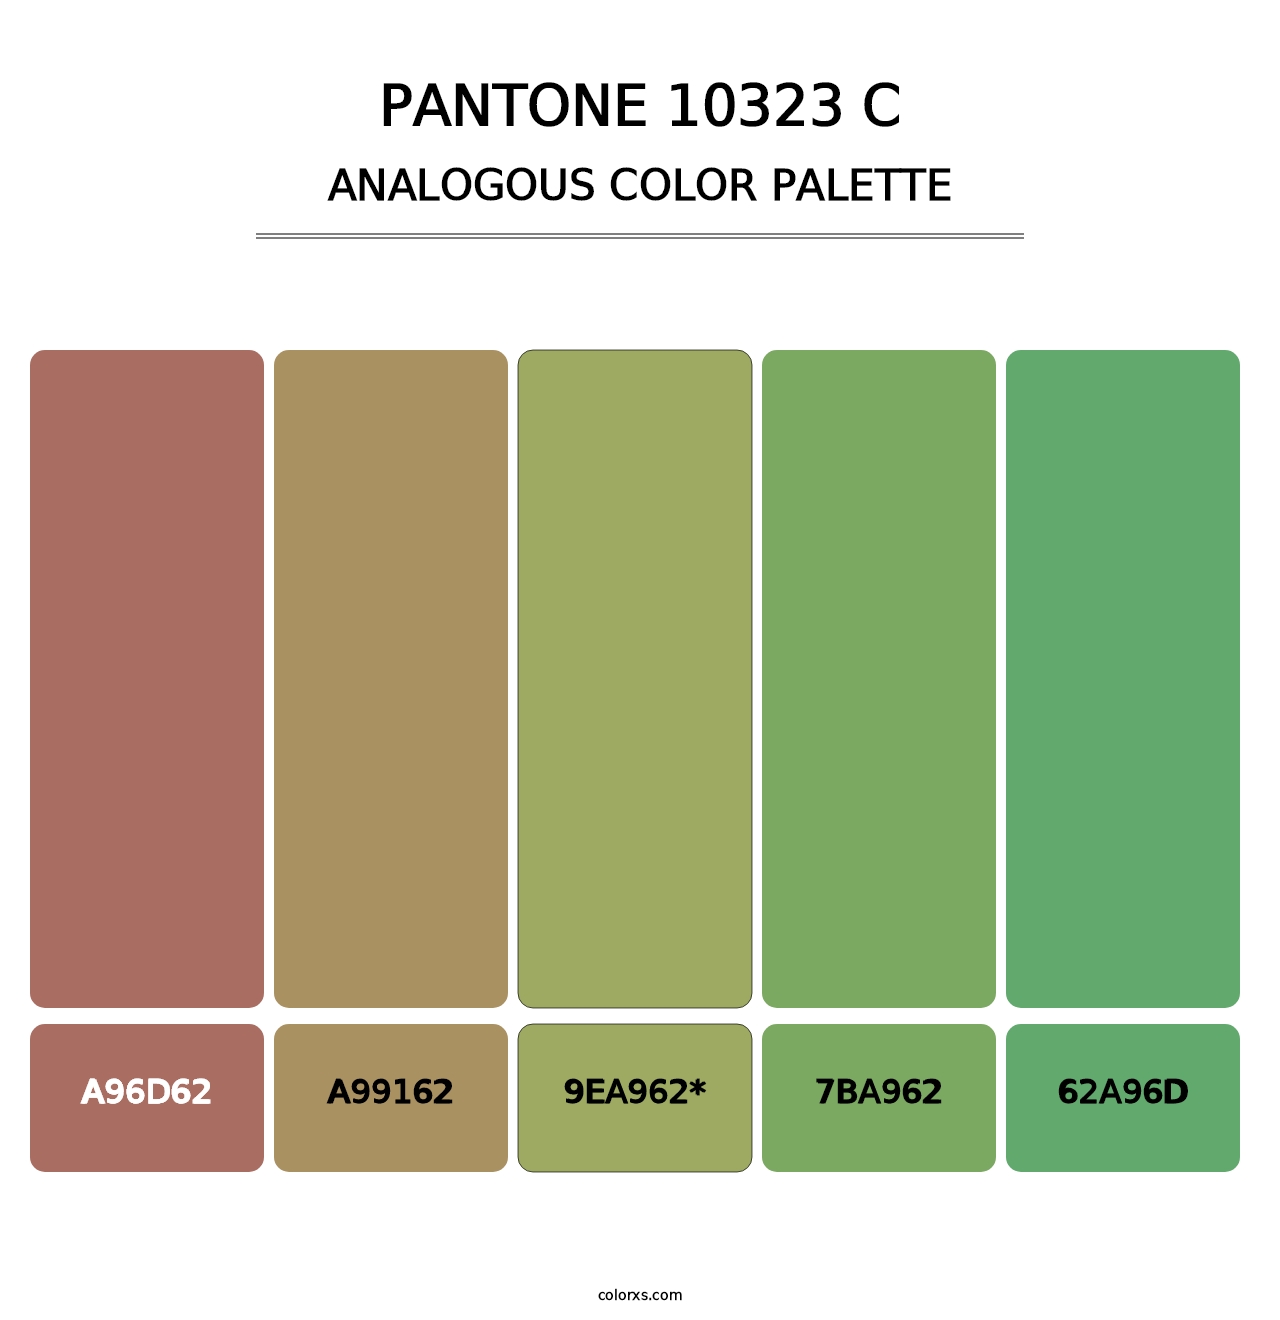 PANTONE 10323 C - Analogous Color Palette